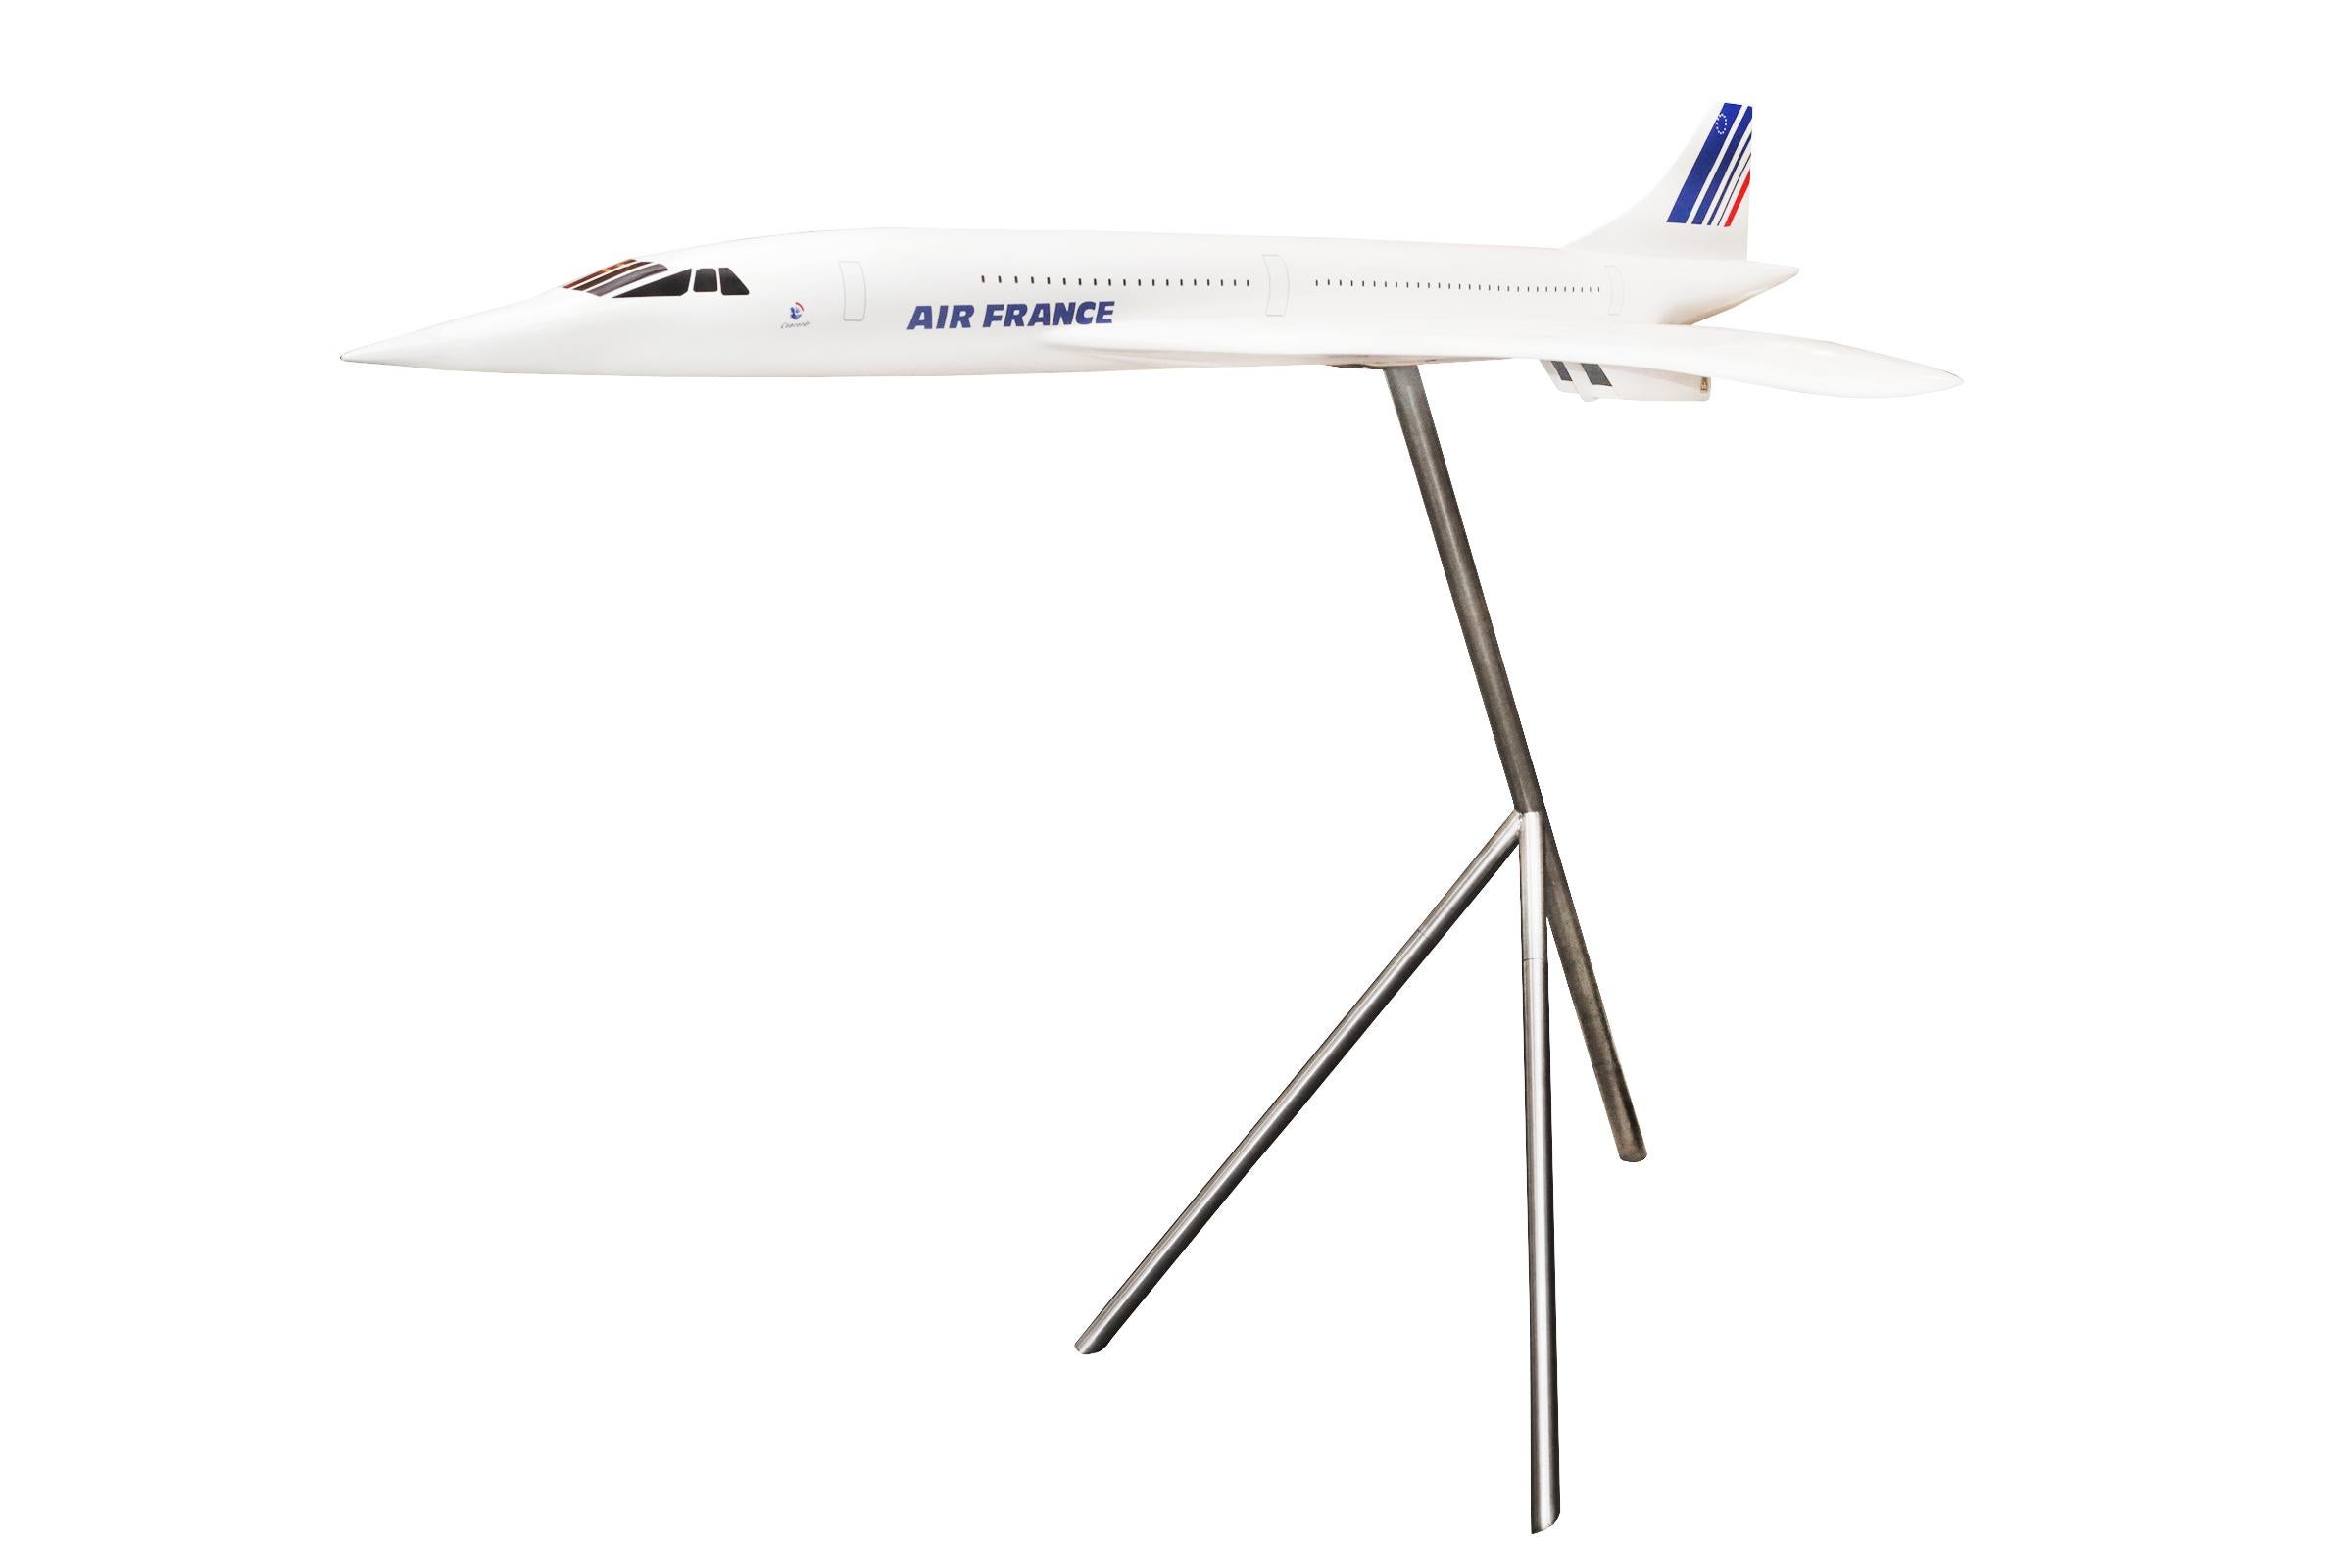 Concorde Modell Maßstab 1/36 Skulptur,
aus Harzfaser, auf poliertem Aluminiumsockel.
Von der Agentur Air France.
Auf Sockel: Höhe 110 cm.